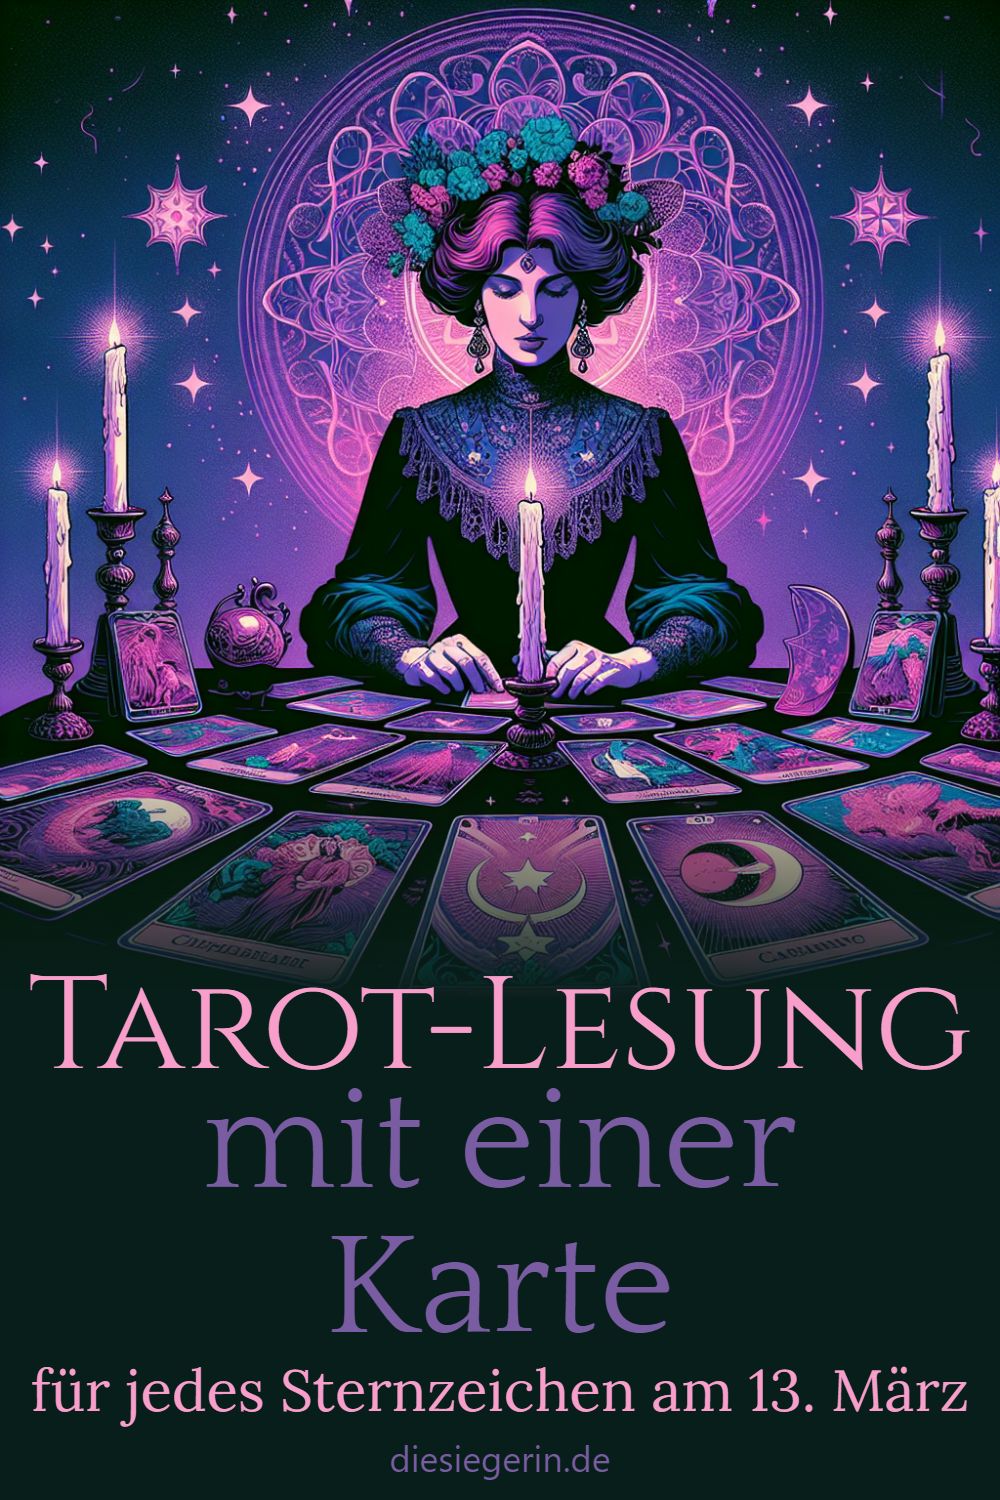 Tarot-Lesung mit einer Karte für jedes Sternzeichen am 13. März